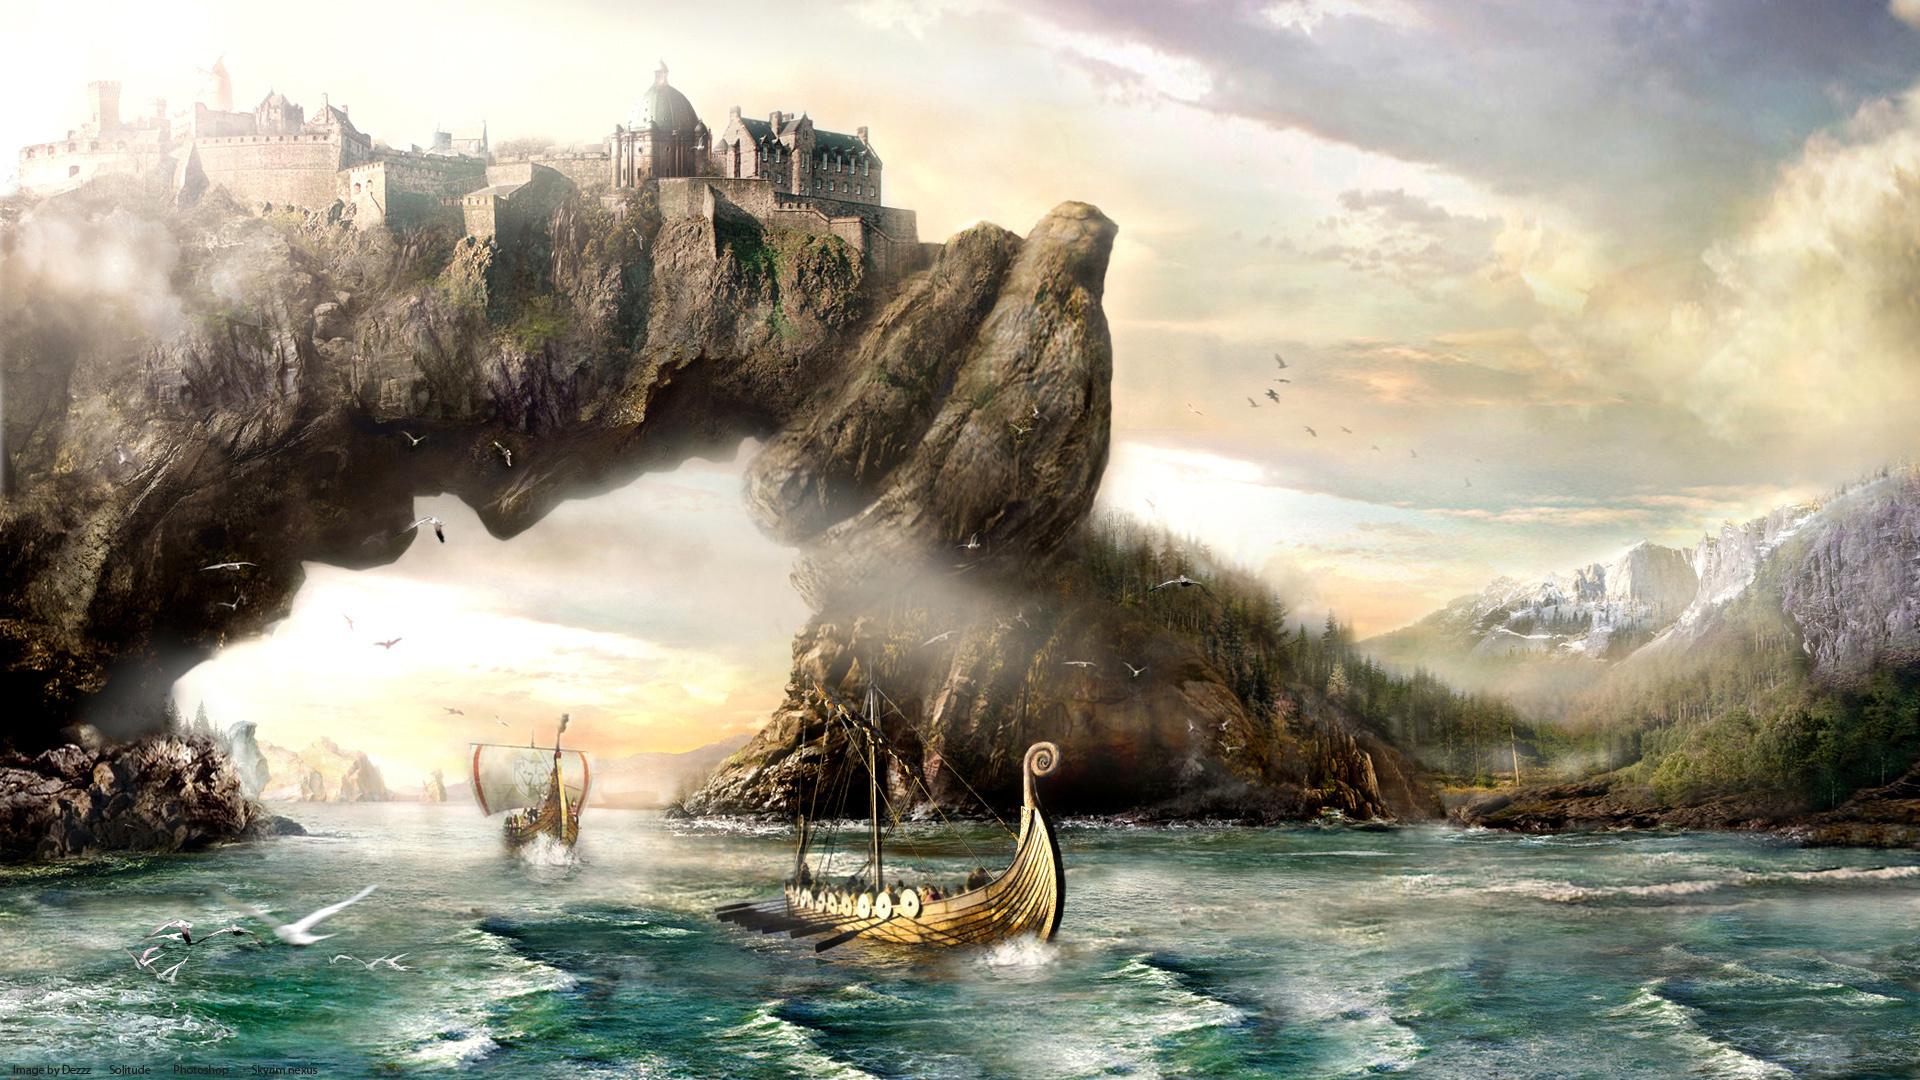 Viking HD Backgrounds for PC download on digitalimagemakerworldcom